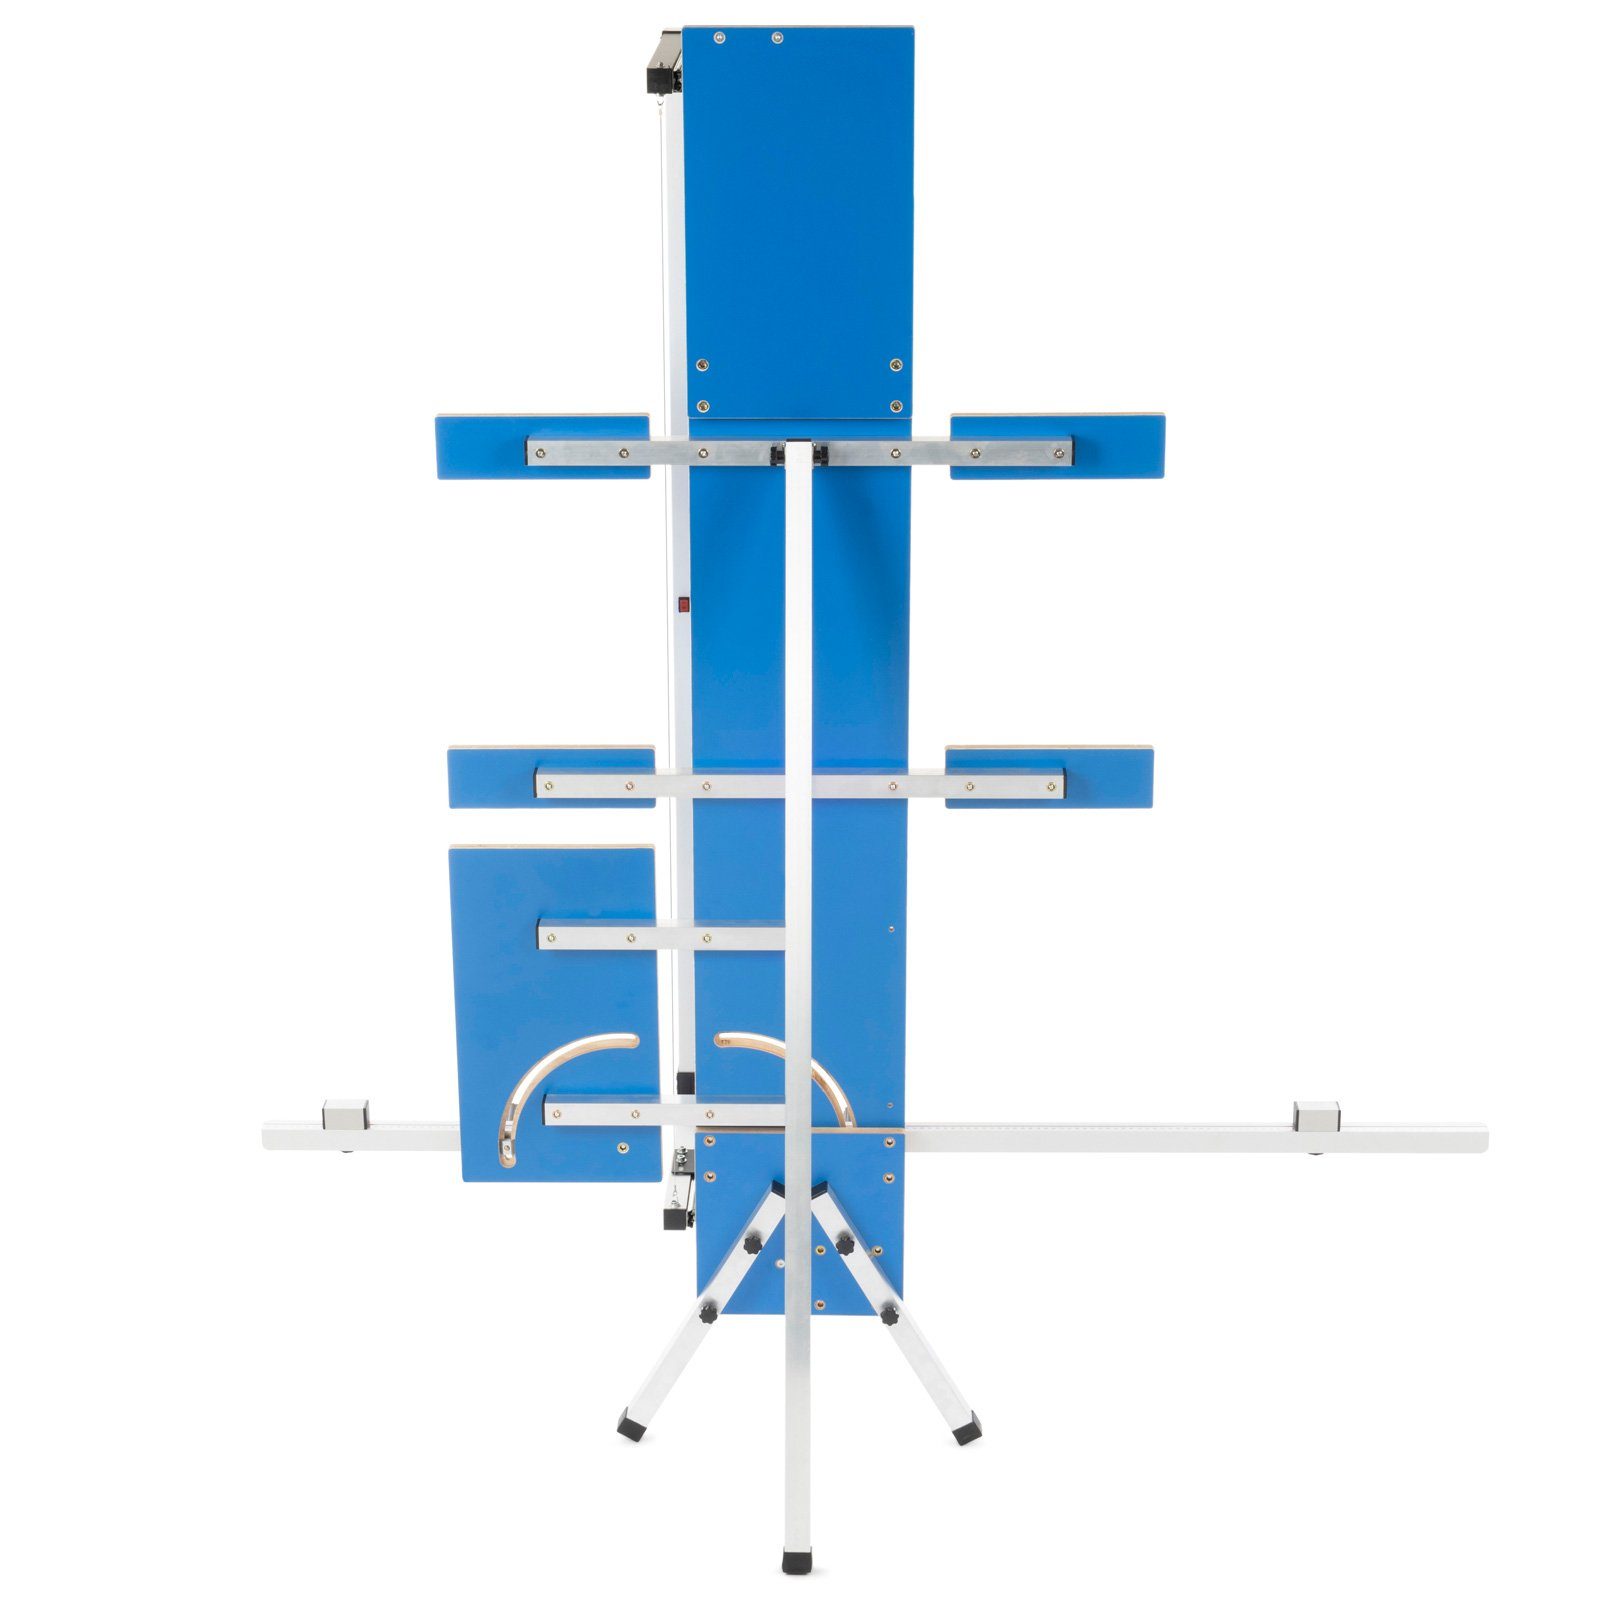 BAUTEC Heißdrahtschneider GAZELLE 6 » Kombi-Set + 10x Schleifraspel Schneidedraht Styroporschneider, »